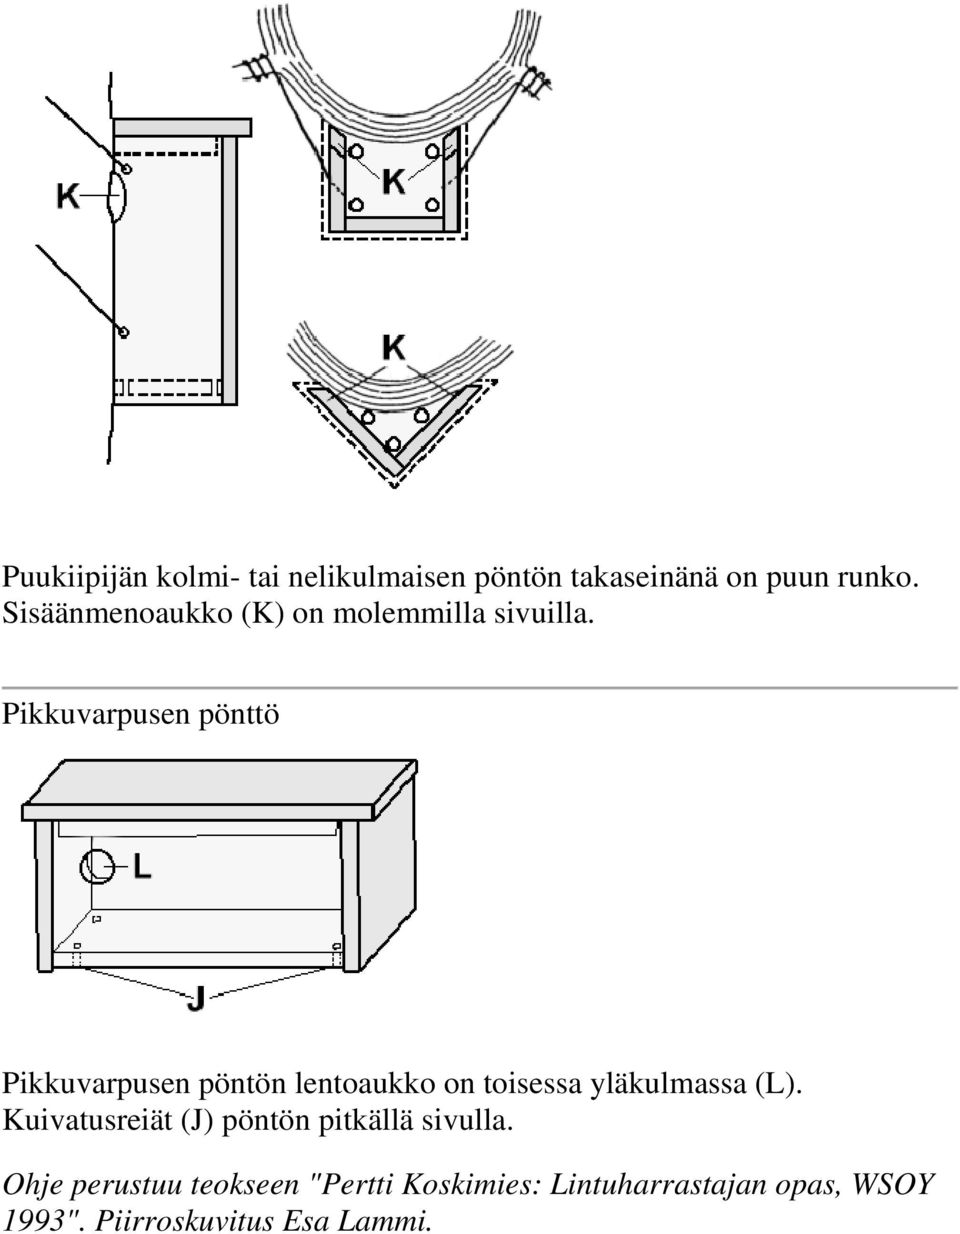 Pikkuvarpusen pönttö Pikkuvarpusen pöntön lentaukk n tisessa yläkulmassa (L).